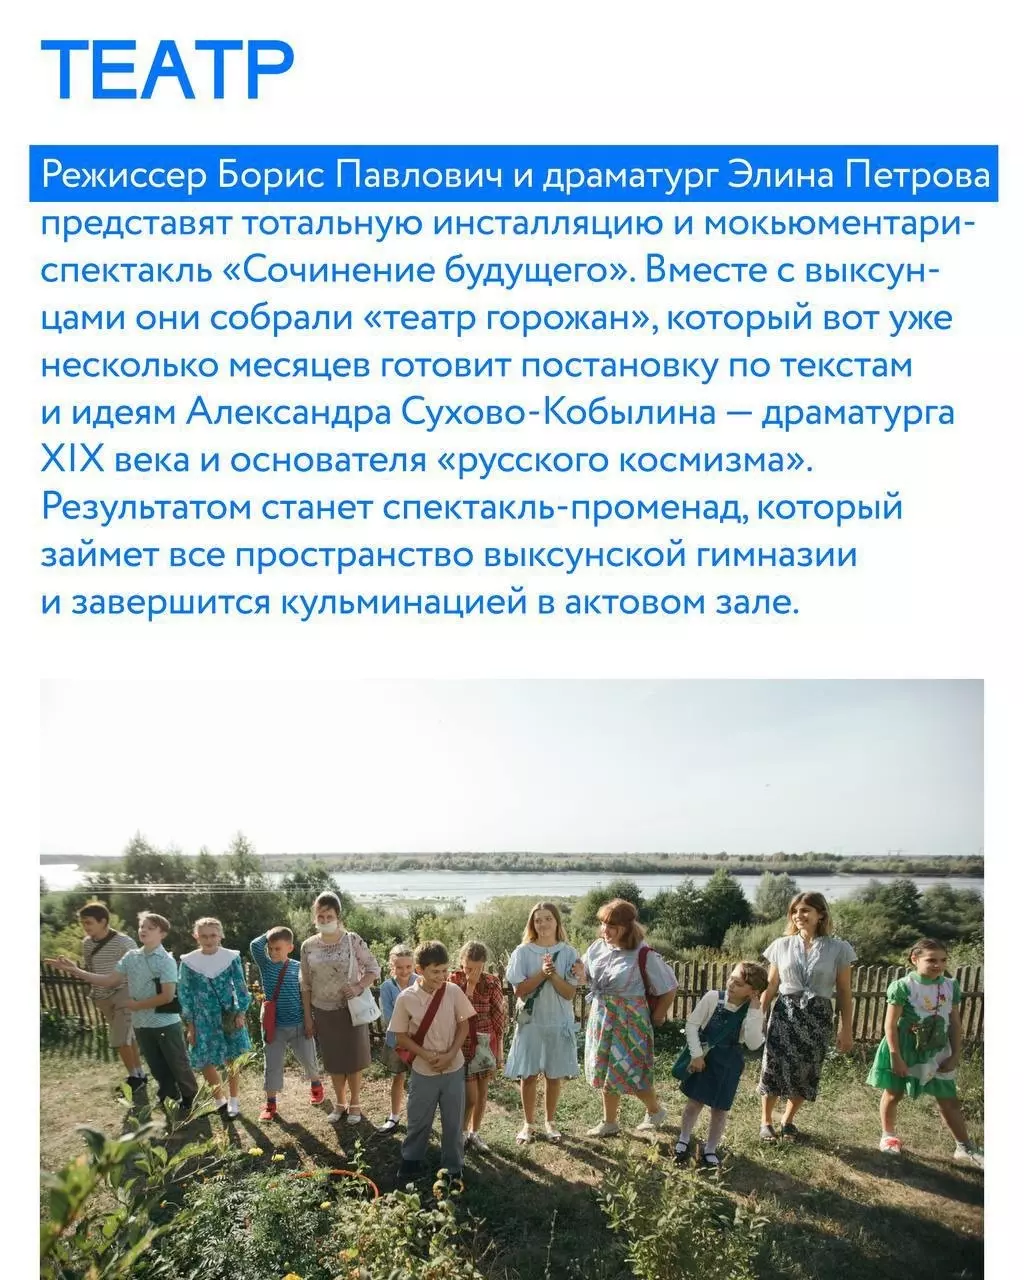 Программа «Выкса-фест» в Нижегородской области 